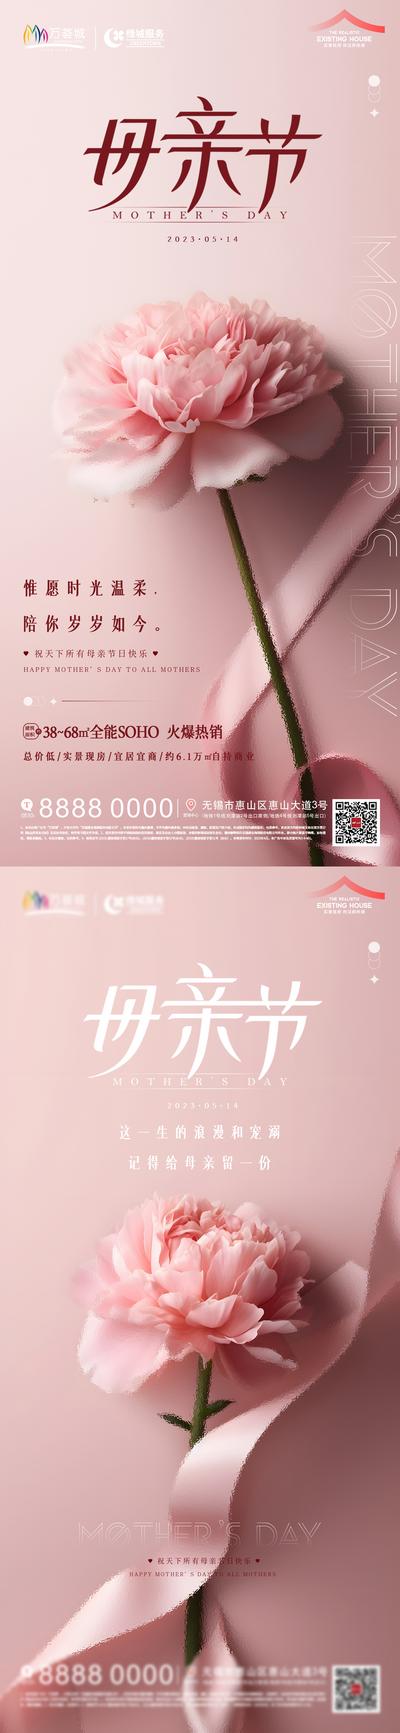 南门网 海报 房地产 公历节日 母亲节 康乃馨